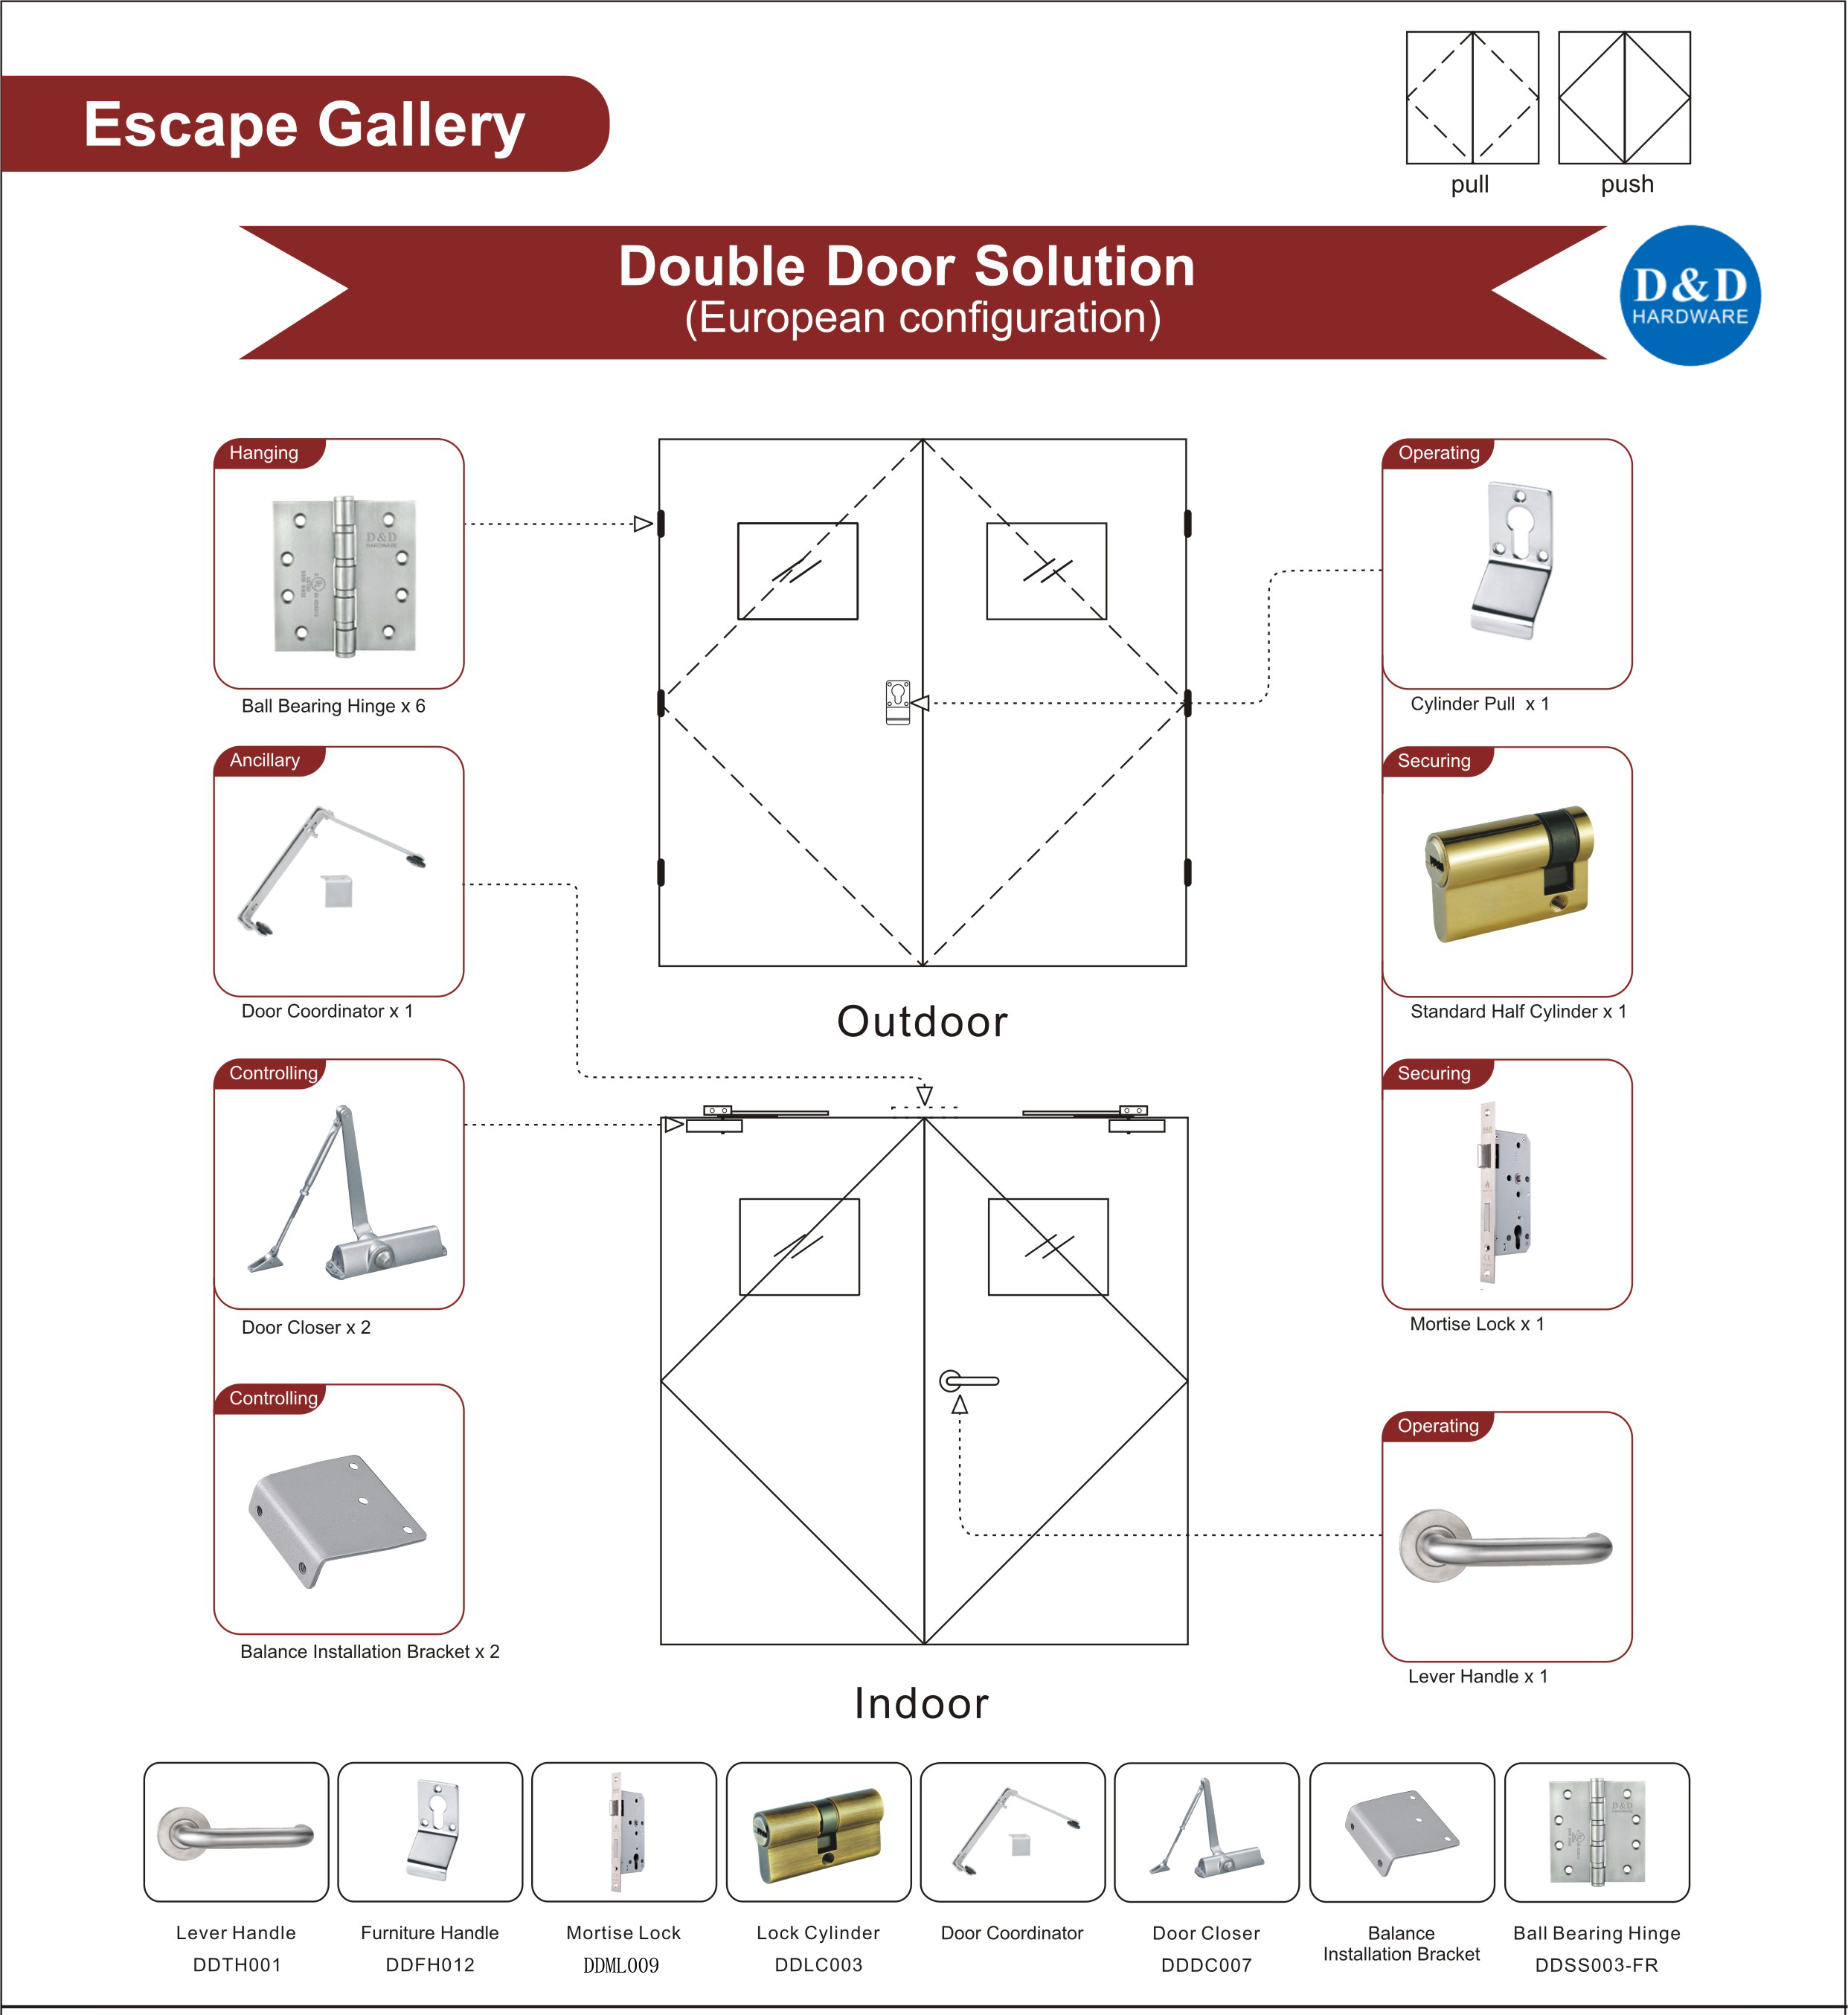 Euro Wooden Escape Gallery Door Solution-D&D Hardware 